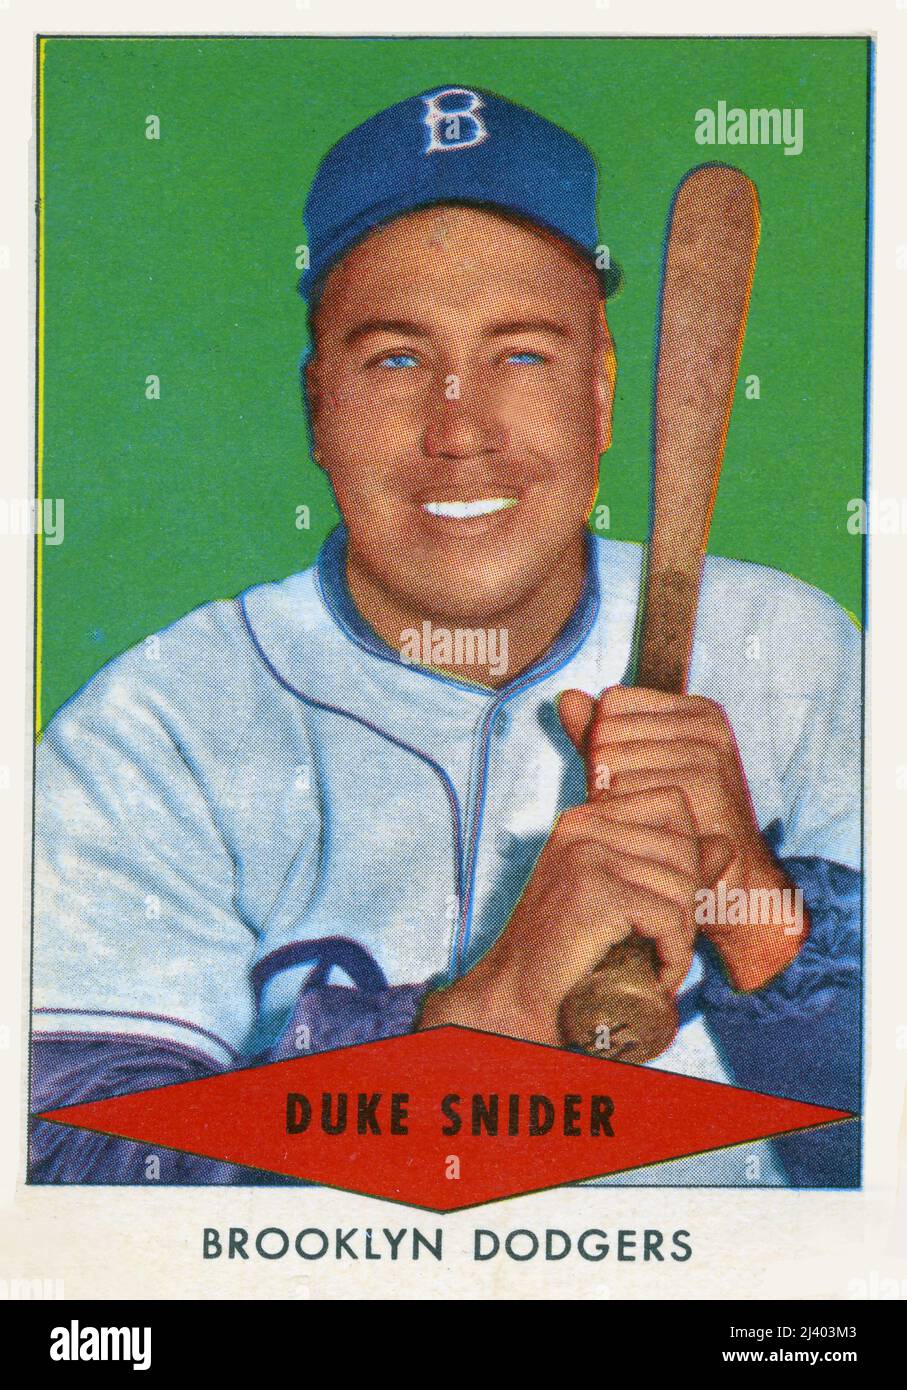 La carta da baseball del A1954 raffigurante il giocatore della stella Duke Snider con i Brooklyn Dodgers è stata emessa come premio con il cibo del cane del cuore rosso. Foto Stock